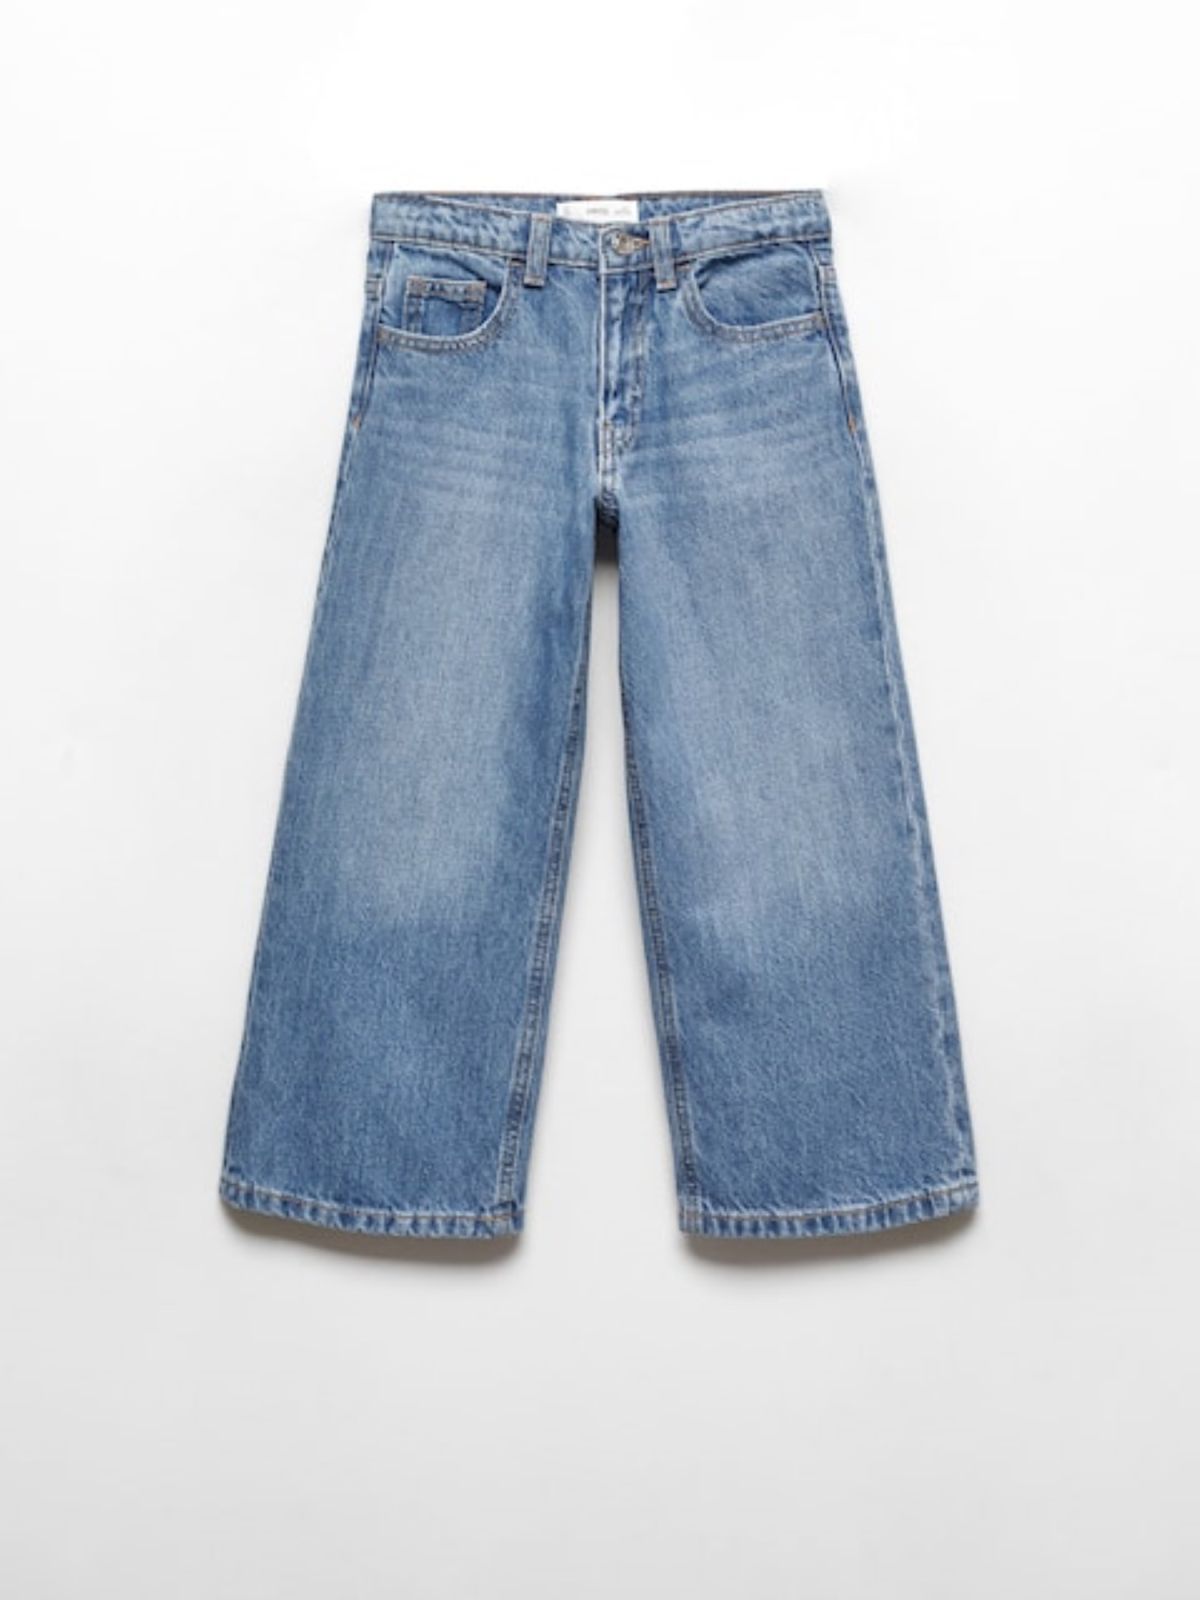  ג'ינס ארוך בגזרה רחבה / בנות של MANGO